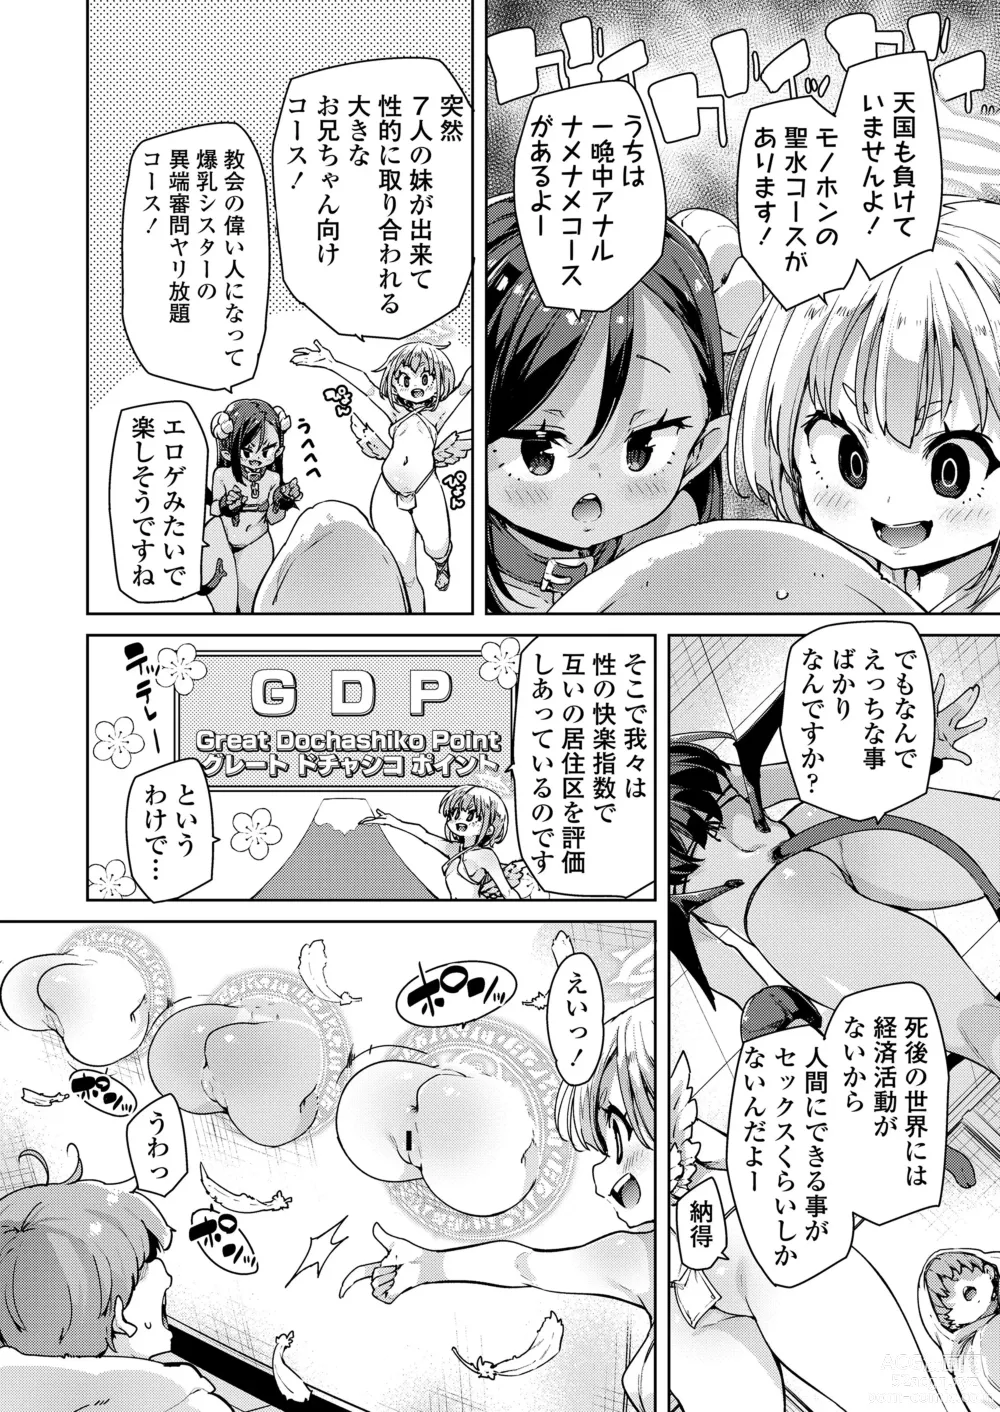 Page 6 of manga Towako Oboro Emaki 14